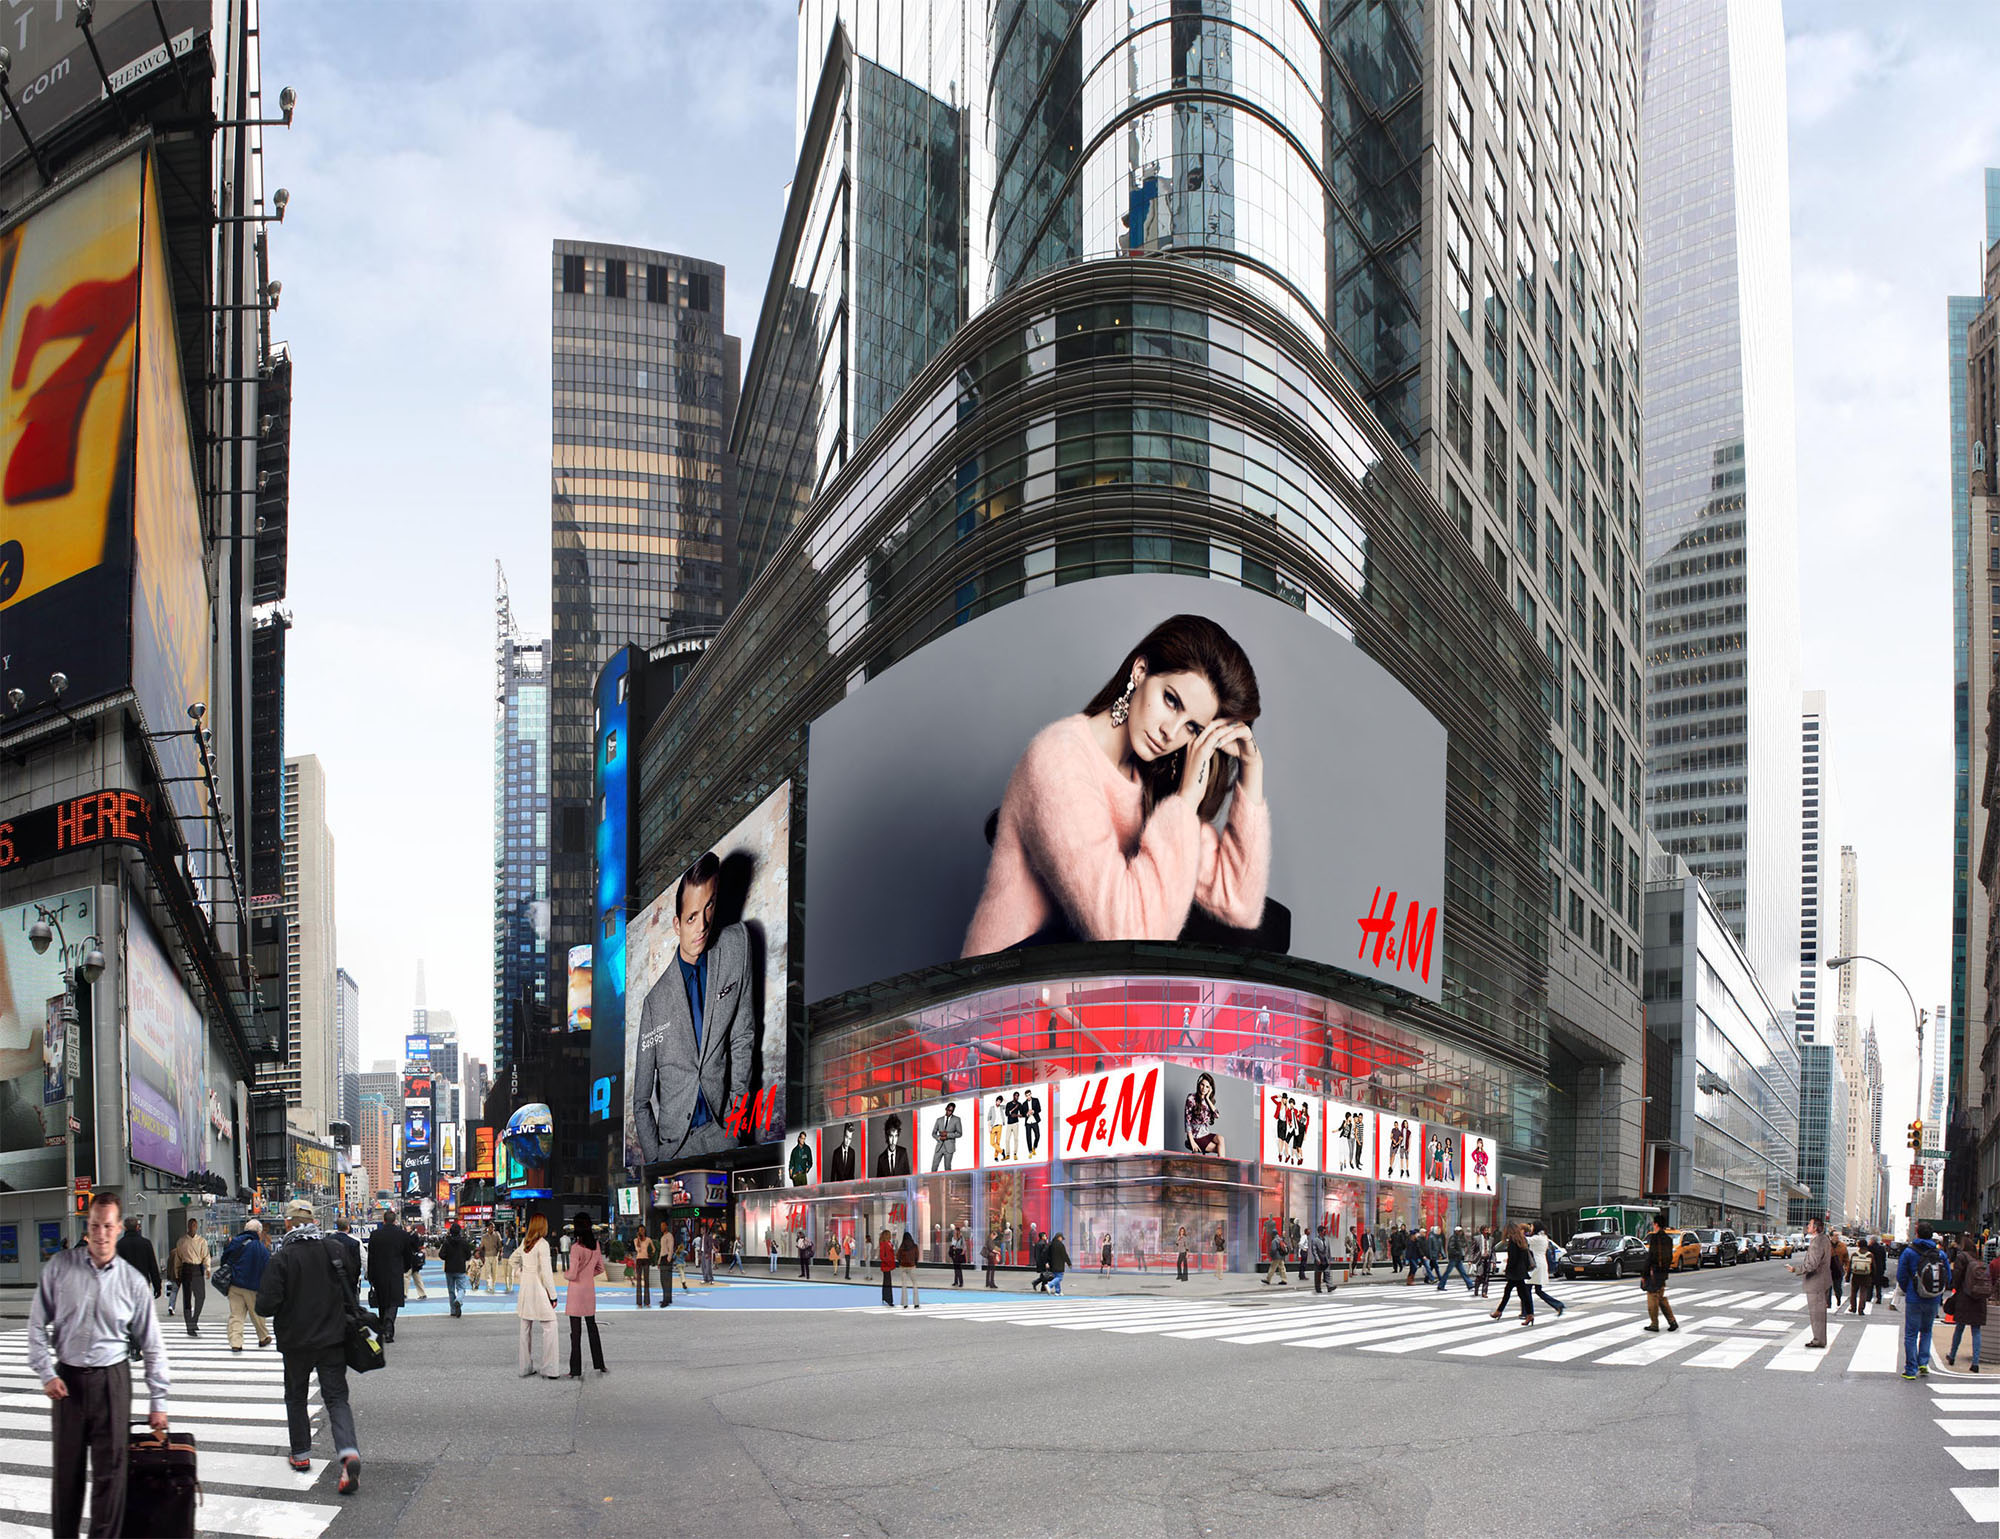 H&M - H&M to Open a New 42,500 sq ft Store in Times Square